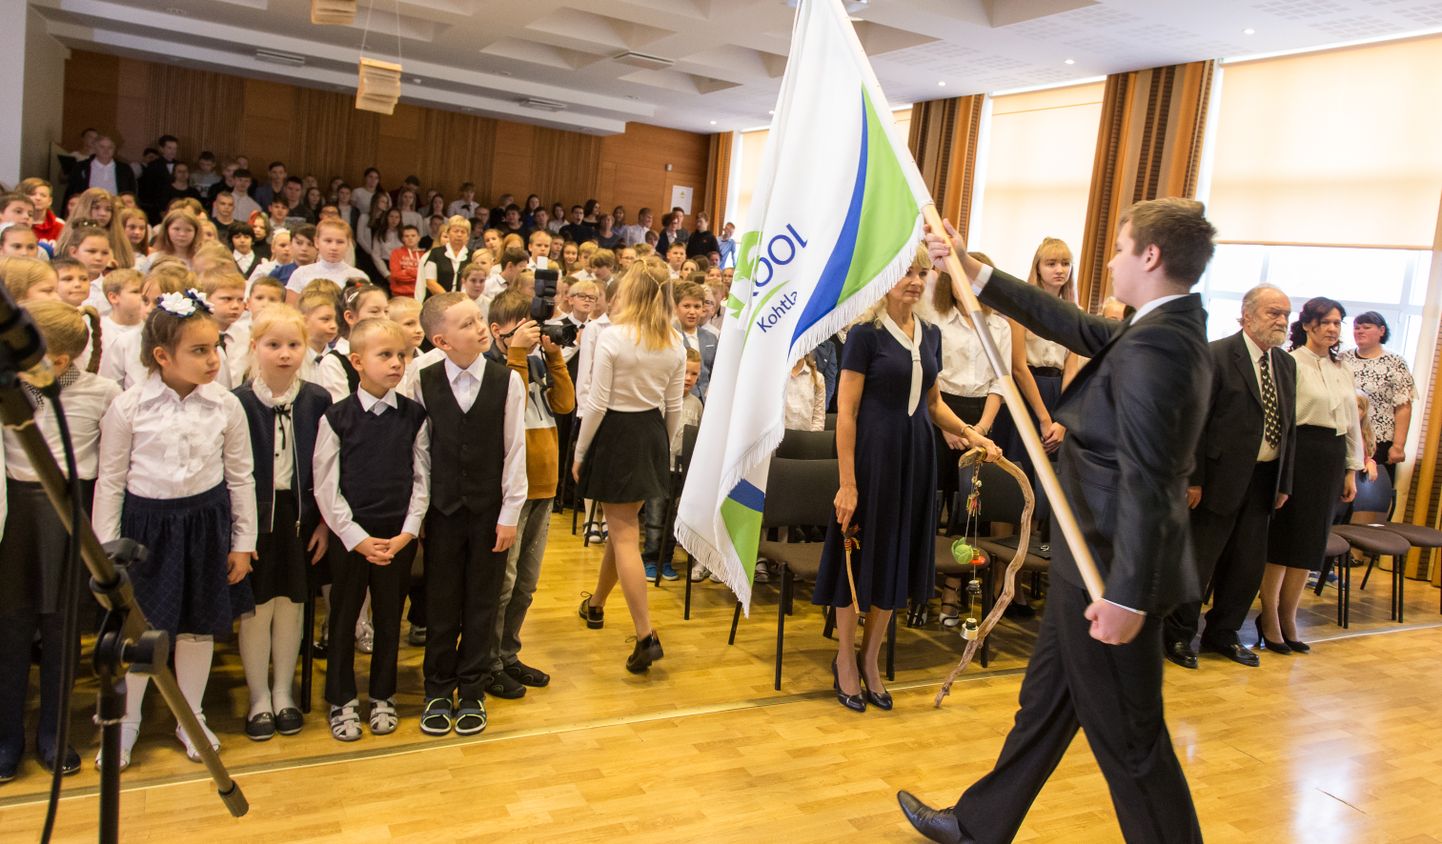 Eesti õppekeelega Järve kooli 320 õpilasest 180 kodune keel ei ole eesti keel. Pilt on tehtud oktoobris, kui põhikooliks muutunud kool tähistas oma 97. sünnipäeva ning sai tuttavaks uue lipu, logo ja koolilauluga.